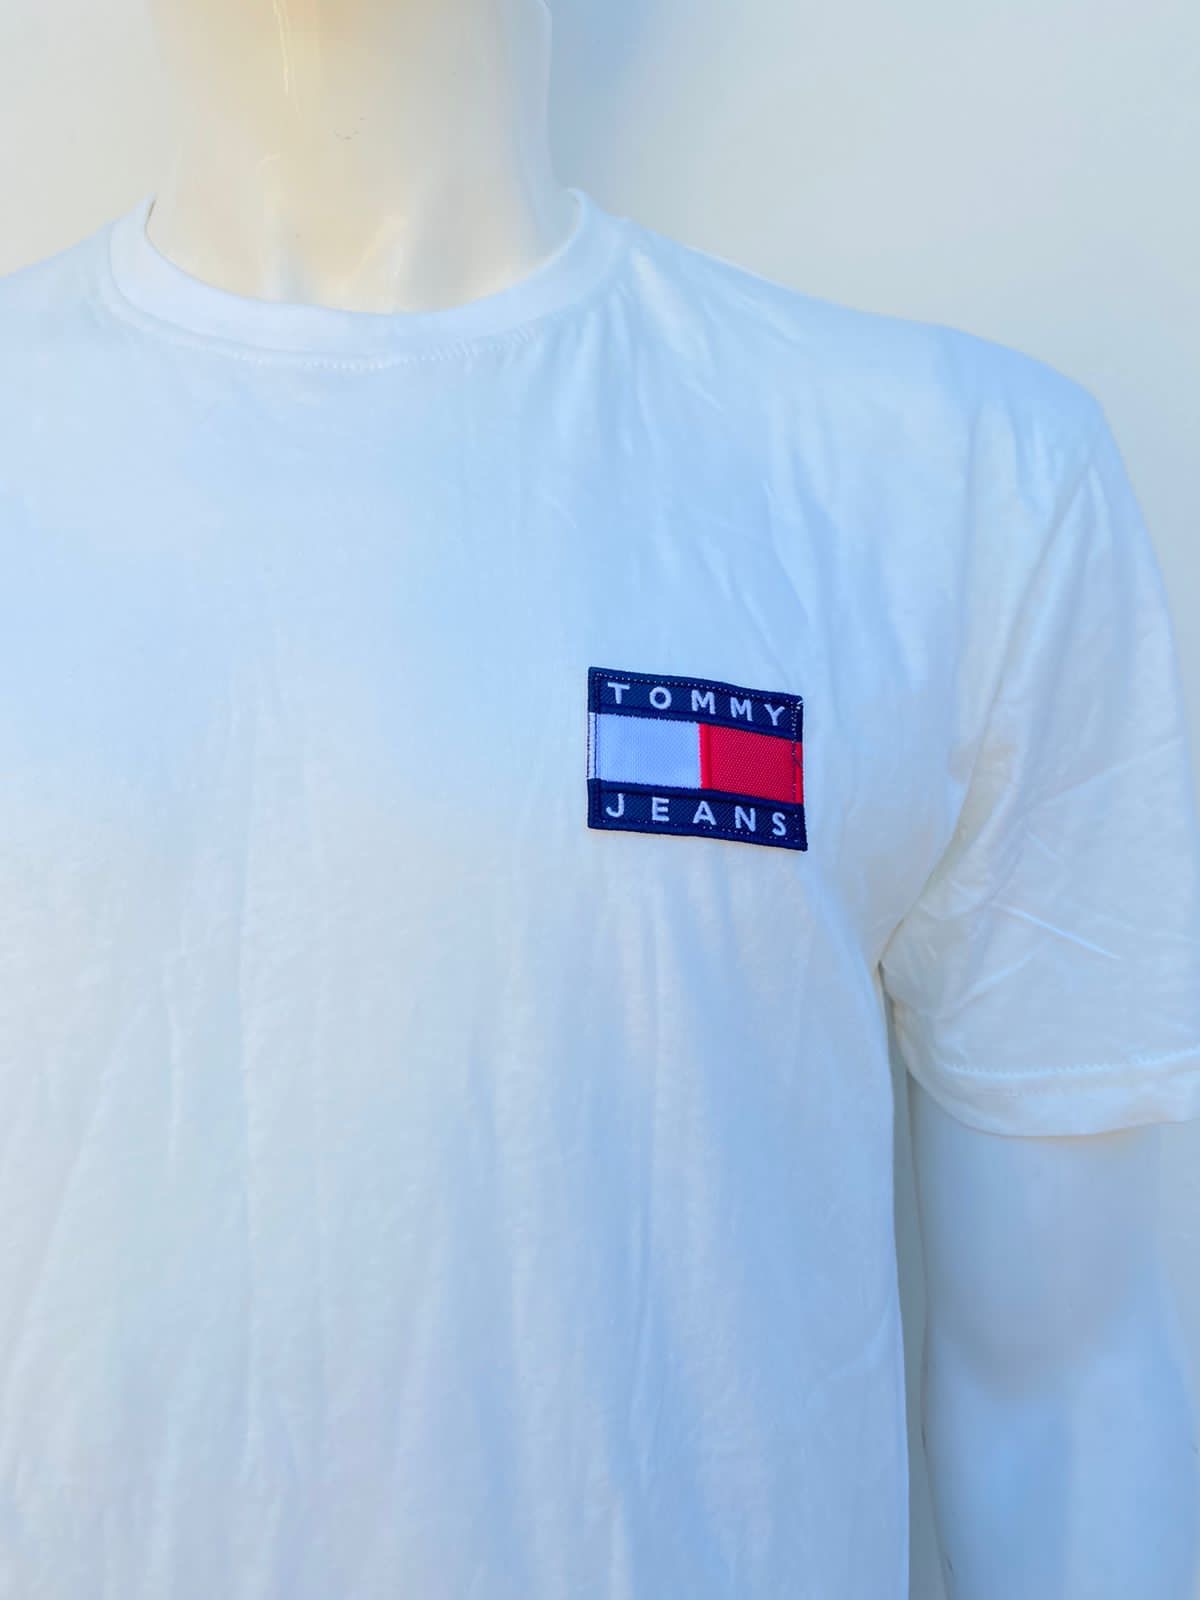 T-shirt Tommy Hilfiger original blanco hueso/ crema con logotipo de la marca en lado.